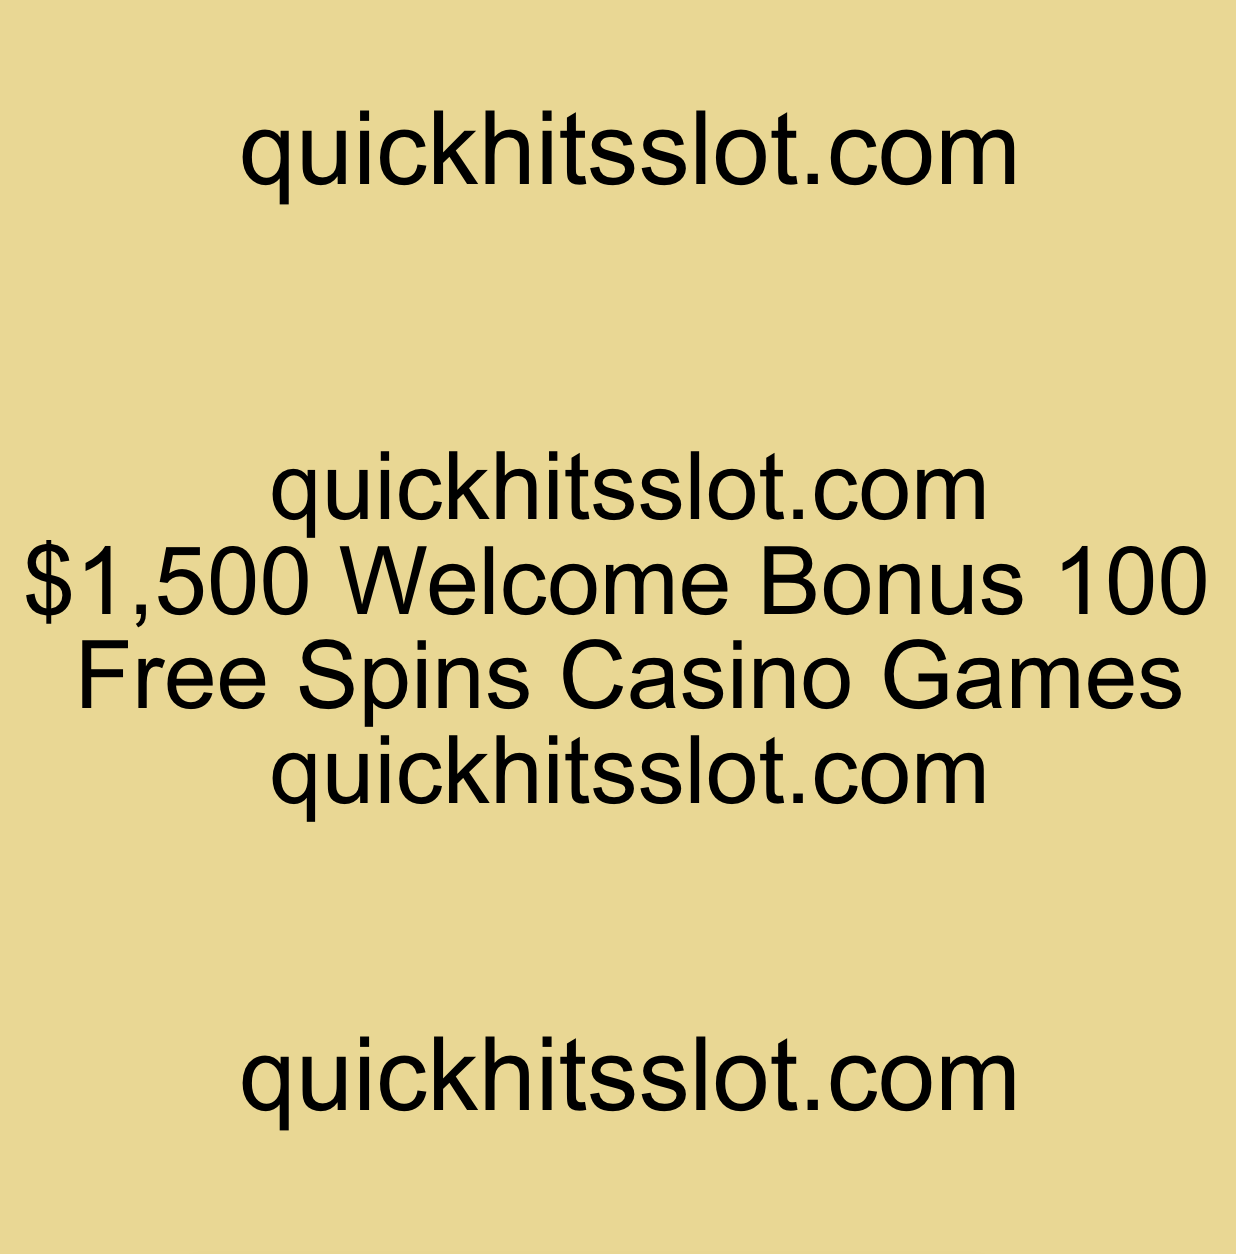 $1,500 Welcome Bonus 100 Free Spins Casino Games quickhitsslot.com